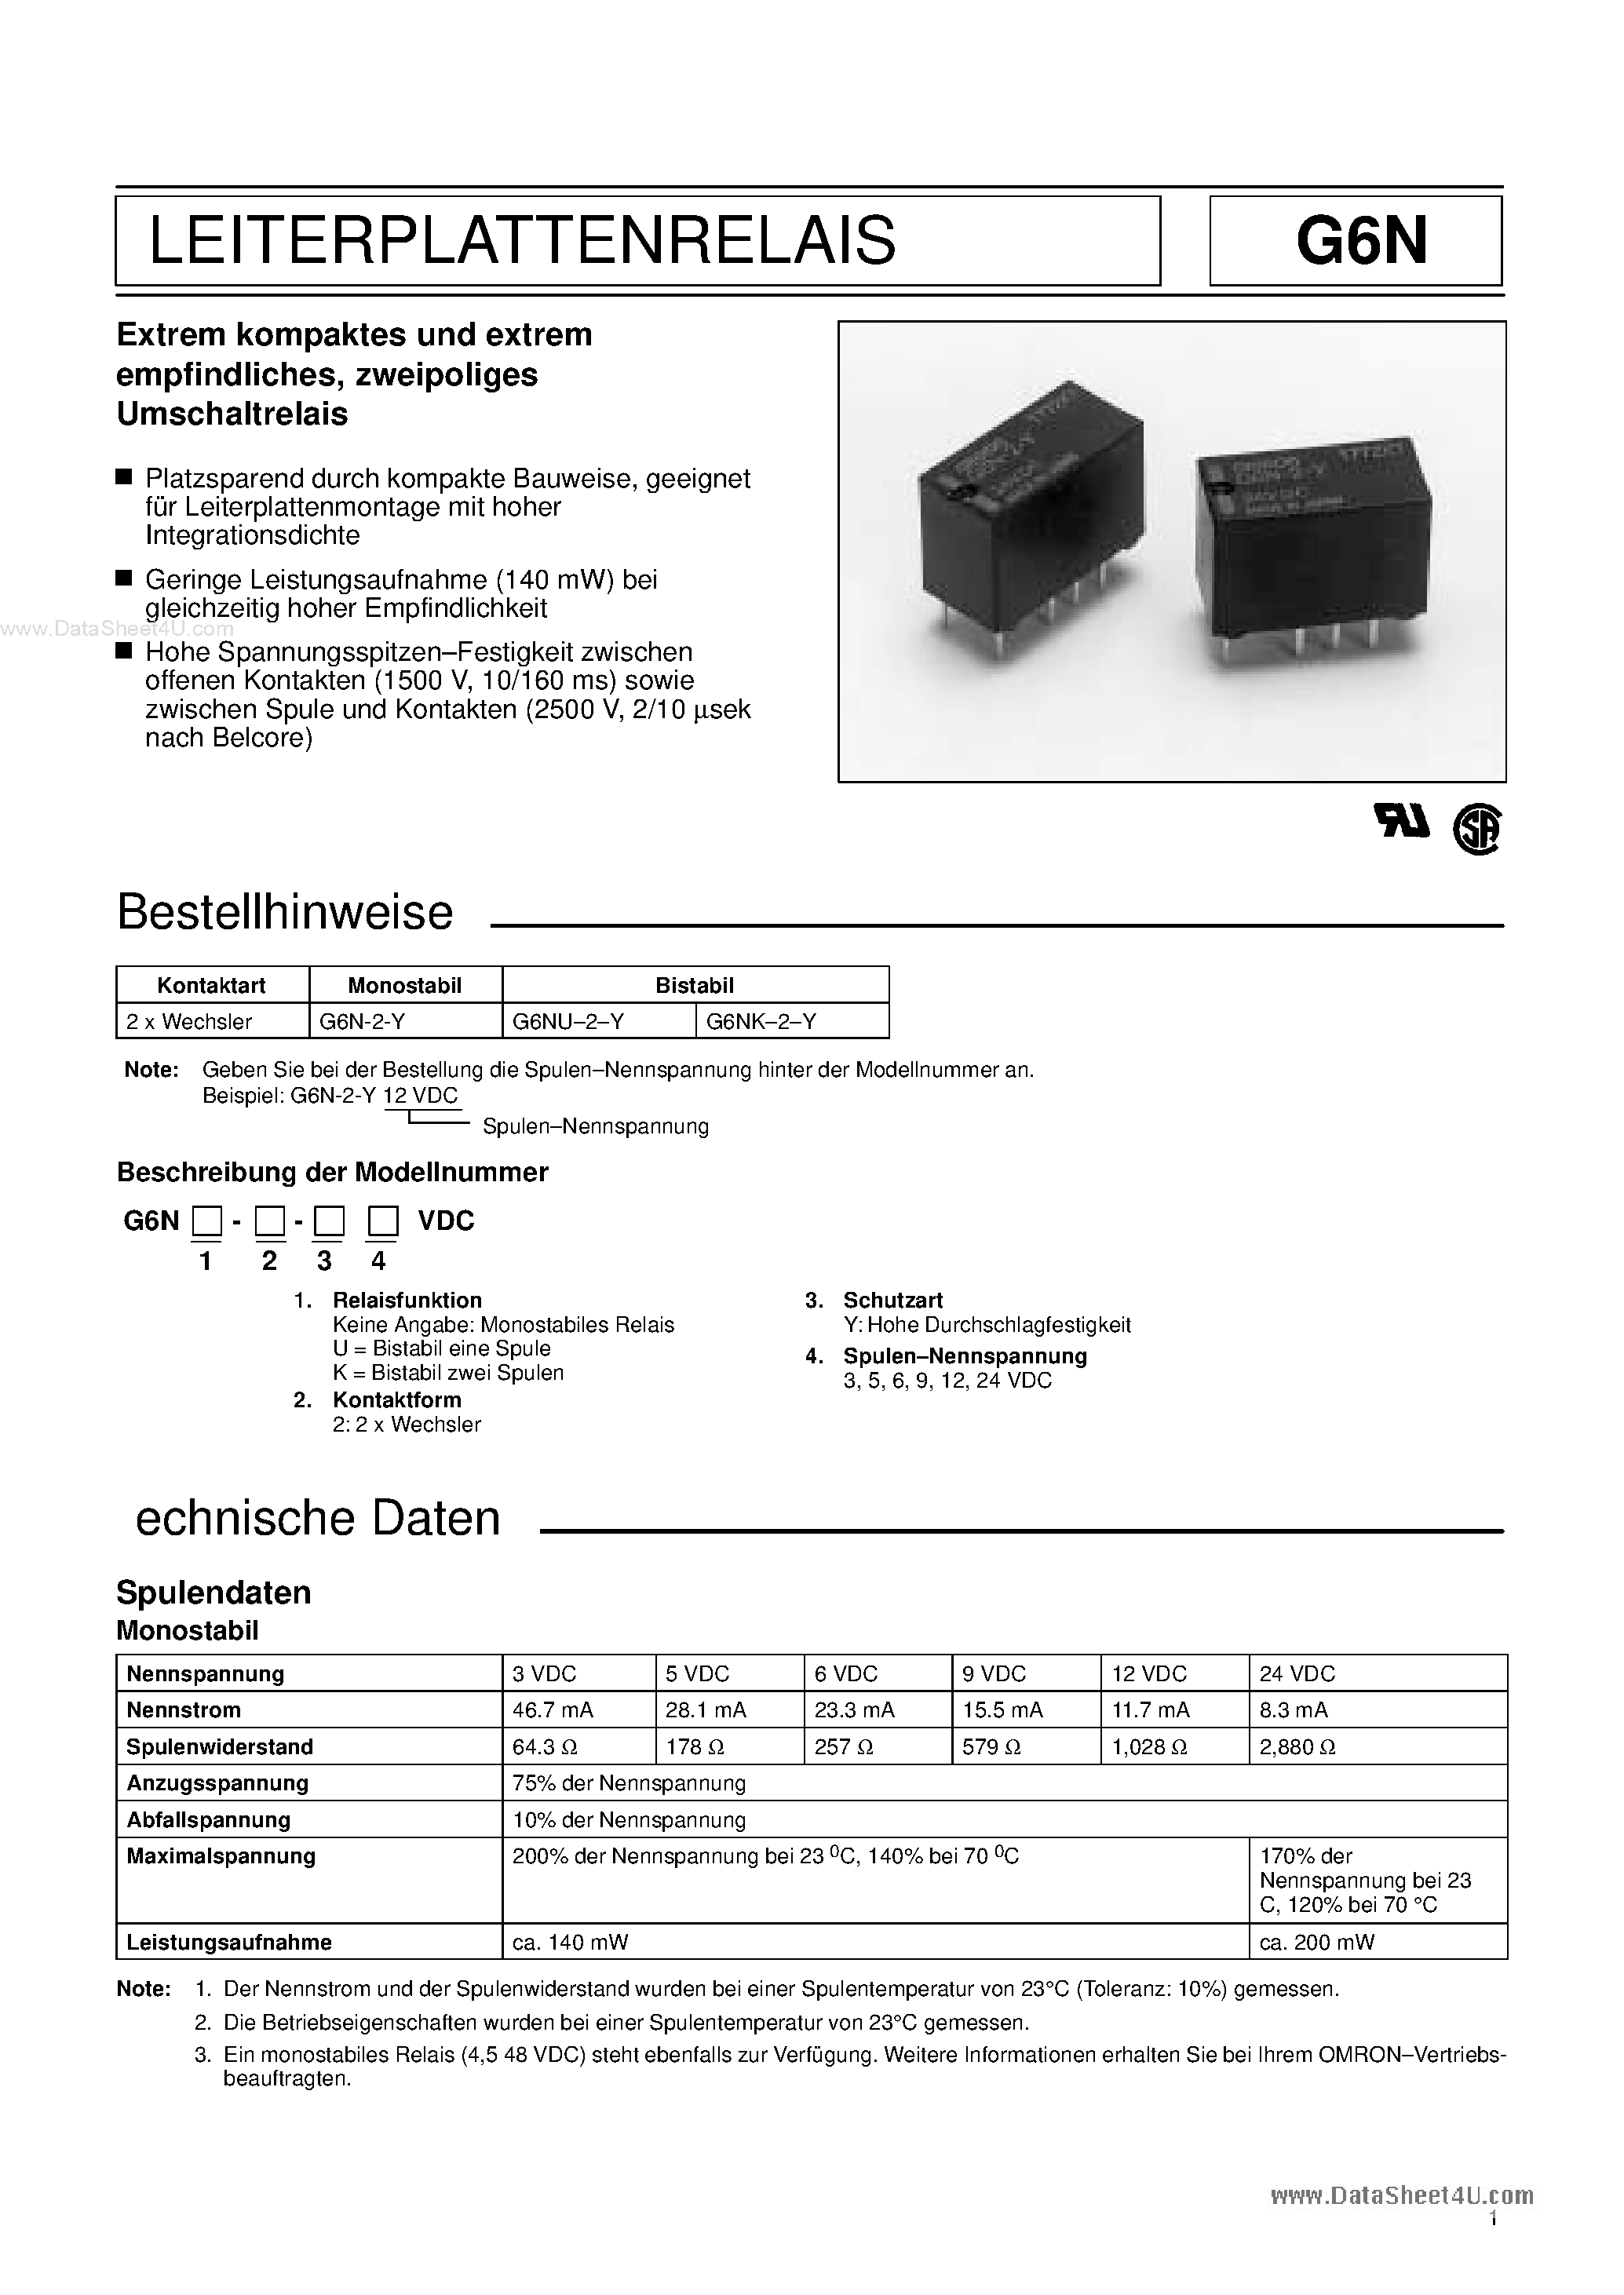 Даташит G6N - Leiterplattenrelais страница 1